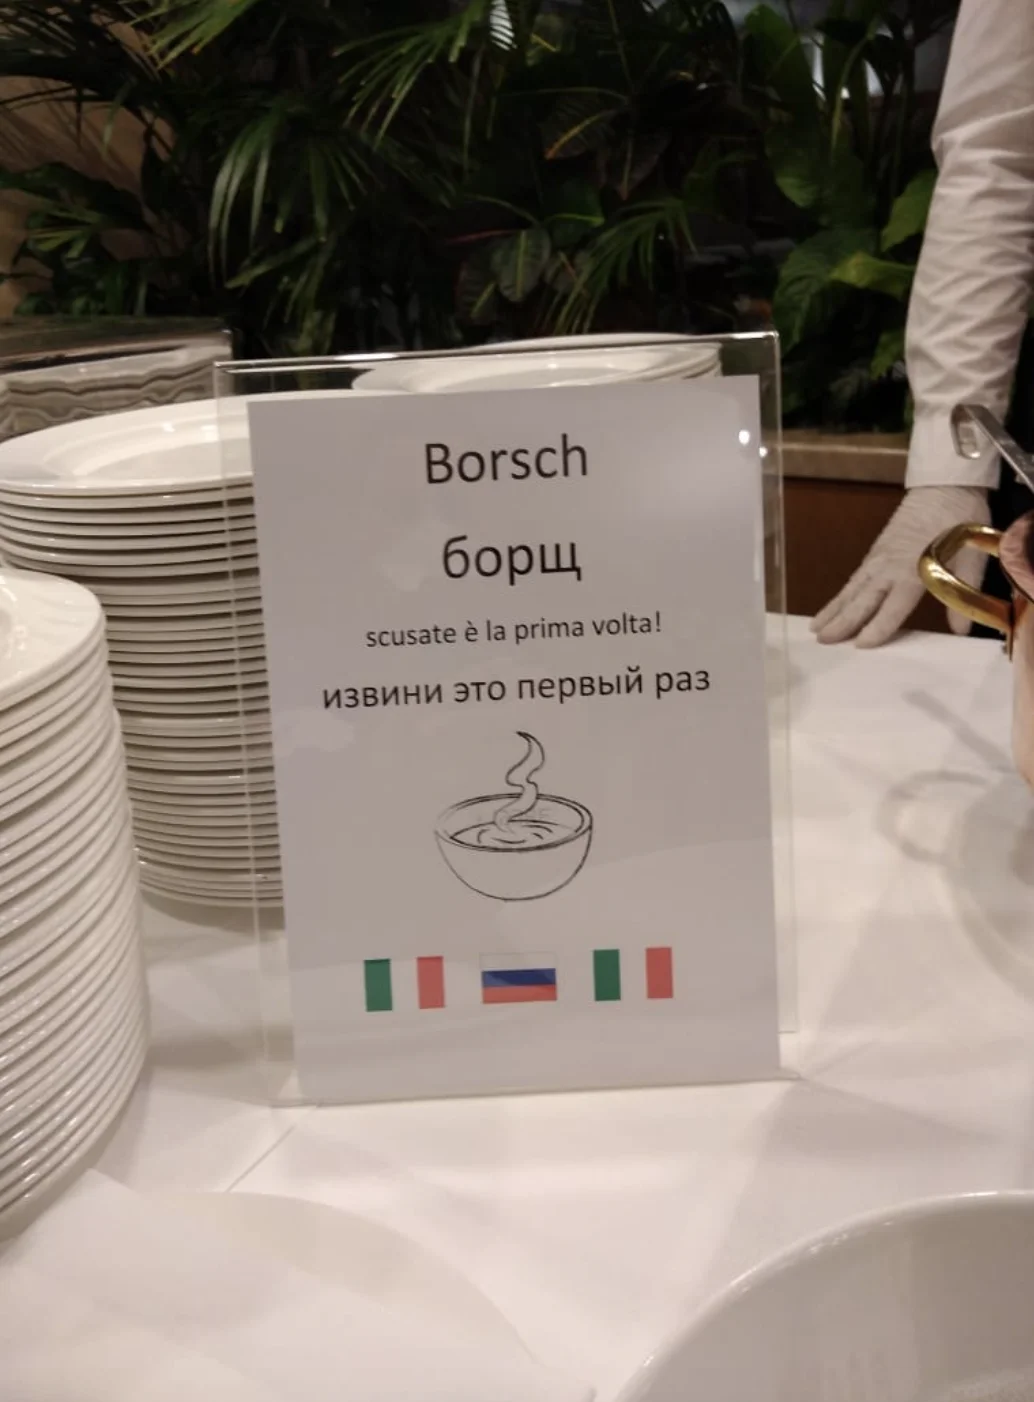 Российских врачей накормили борщом в Италии. В соцсетях все радуются этому - фото 1